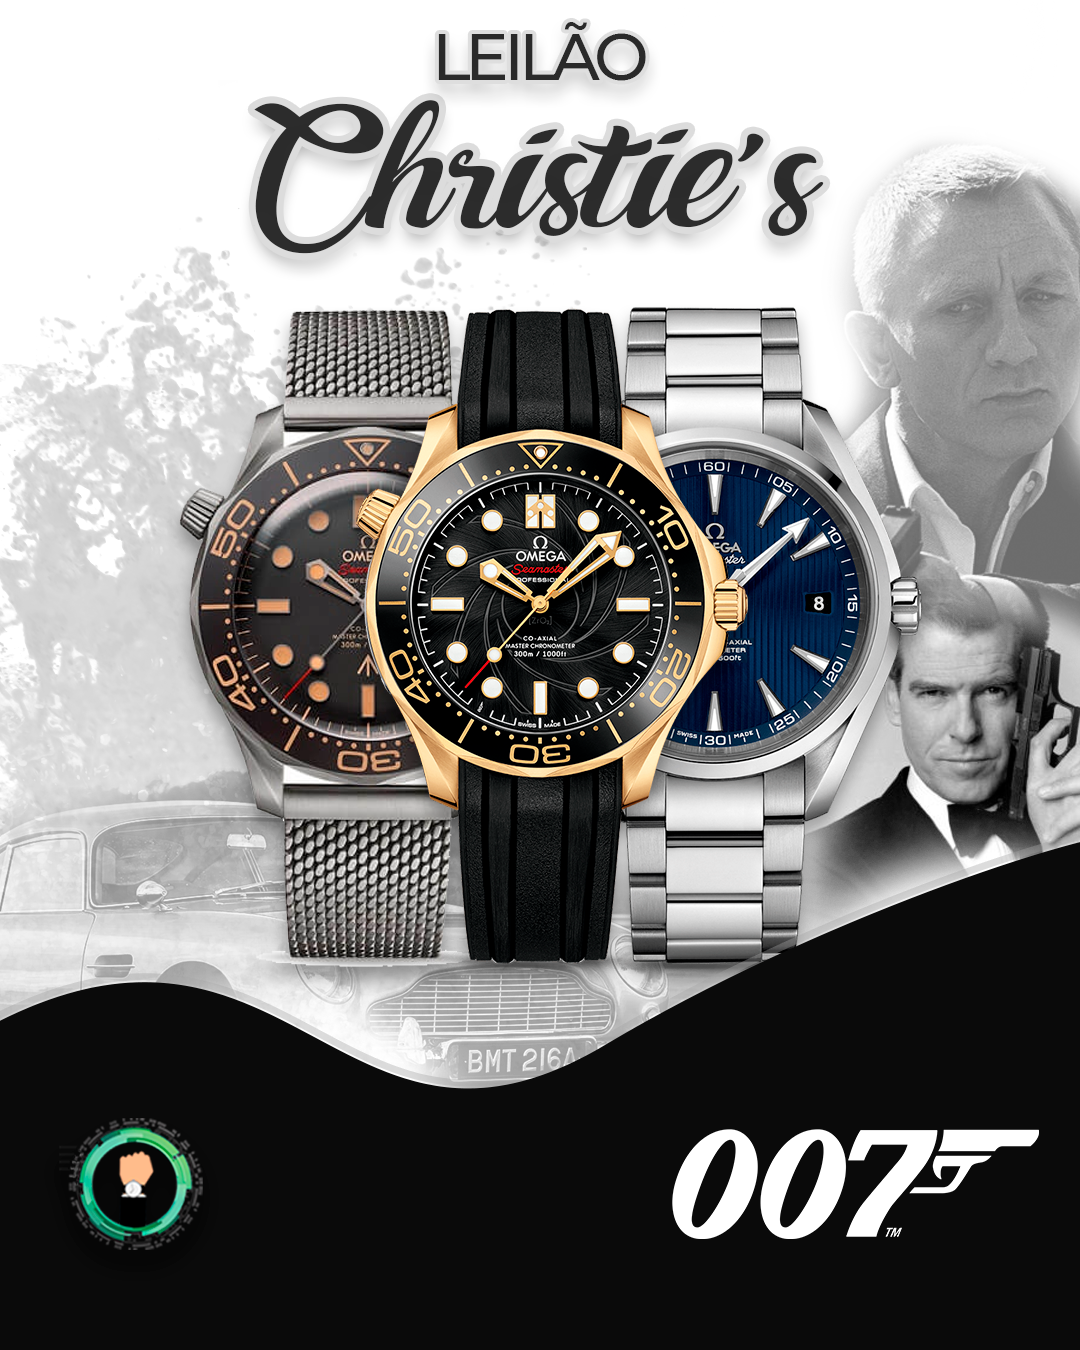 Leilão de peças usadas pelo 007